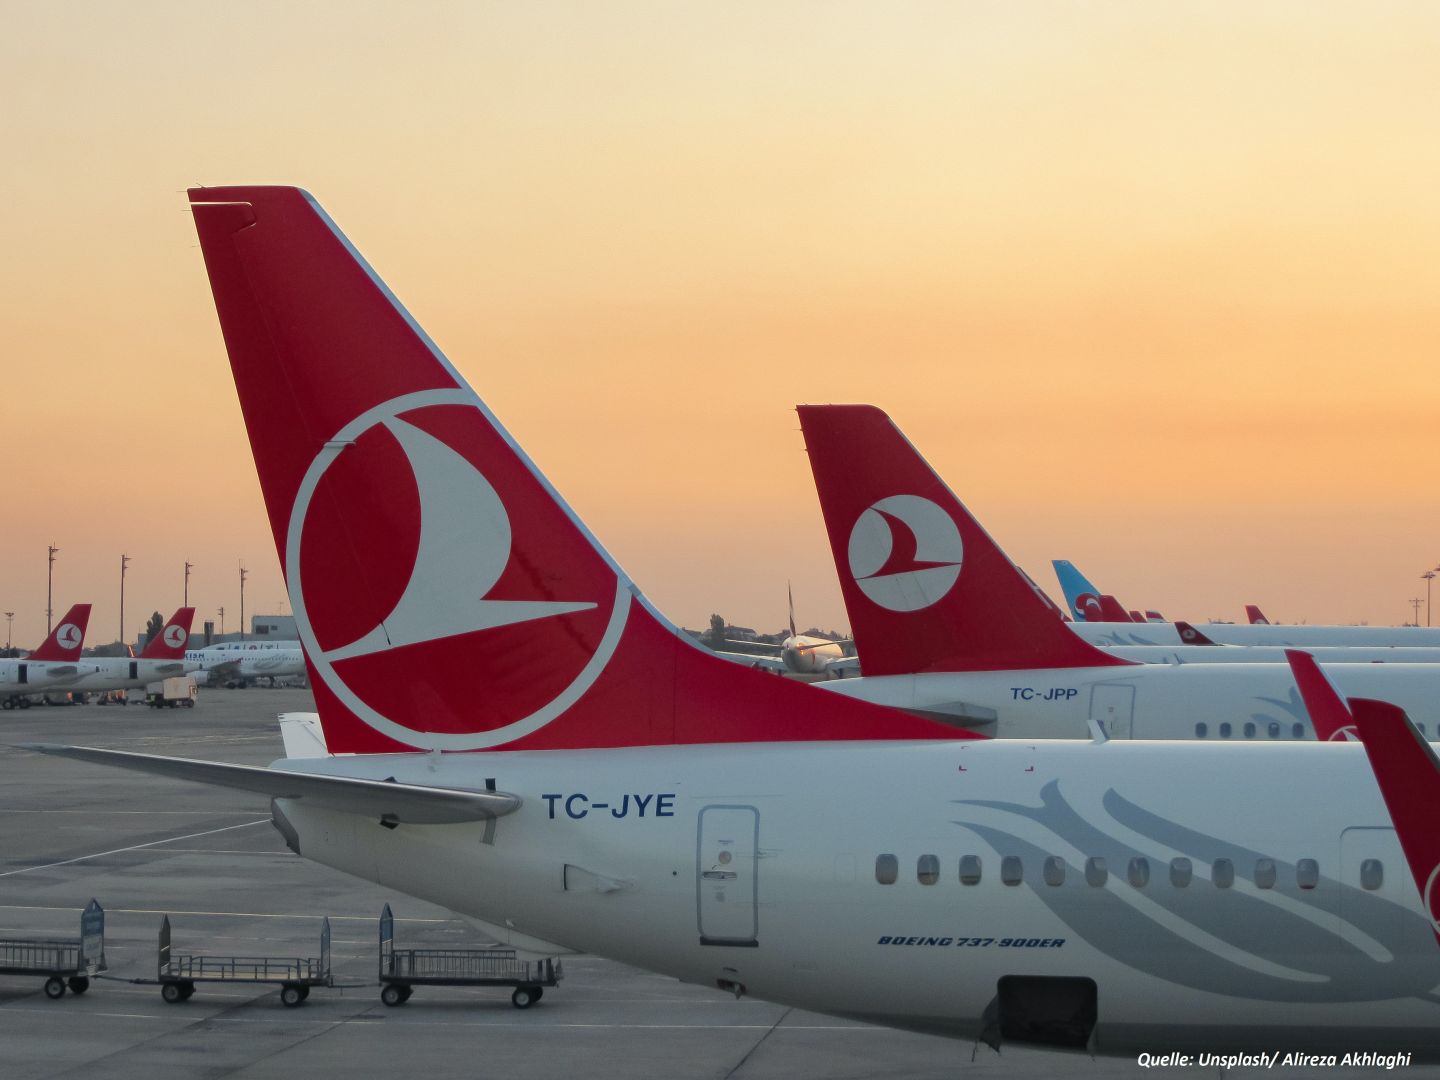 Zahl der Passagiere auf dem Flughafen Istanbul übersteigt 10 Millionen